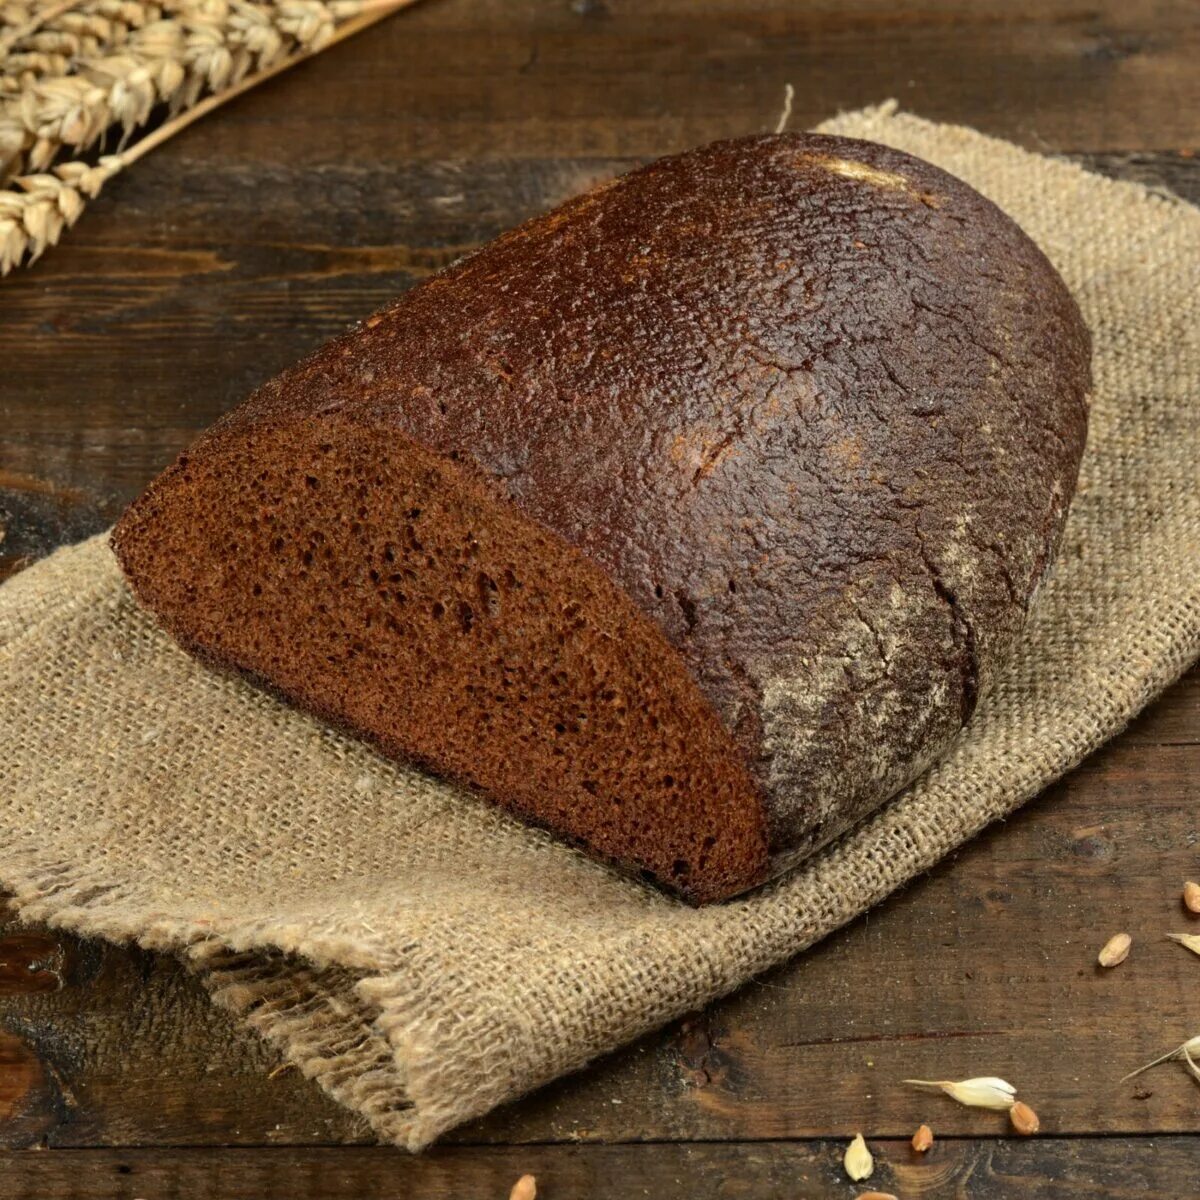 Подовый хлеб это какой. Хлеб ржаной бездрожжевой. Хлеб ржаной подовый. Хлеб белый бездрожжевой. Хлеб черный бездрожжевой.